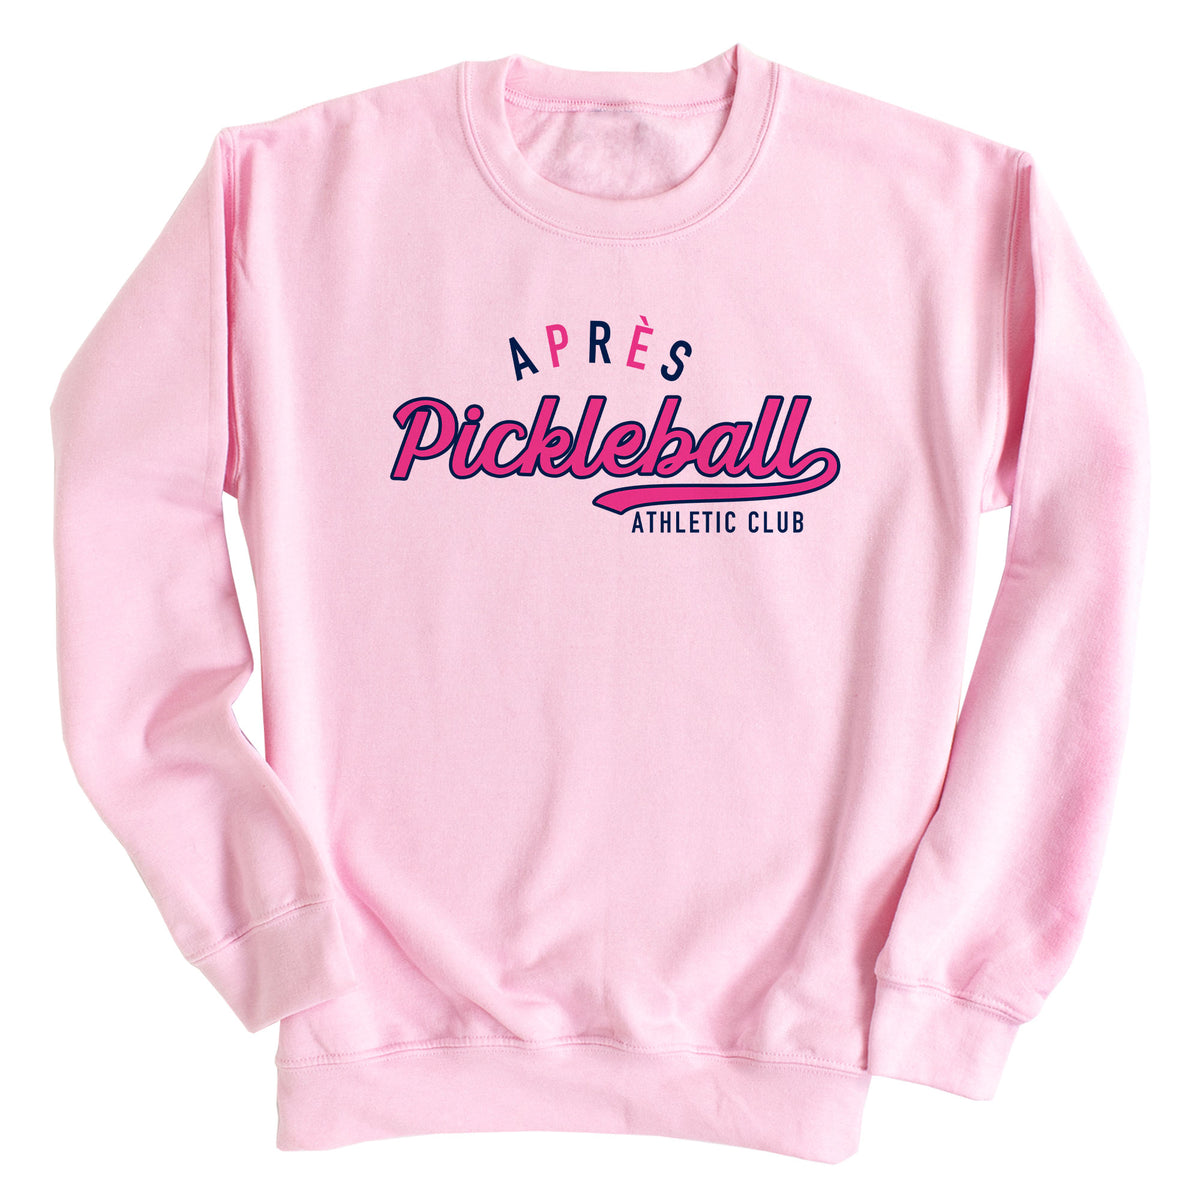 Après Pickleball Athlete Club Sweatshirt